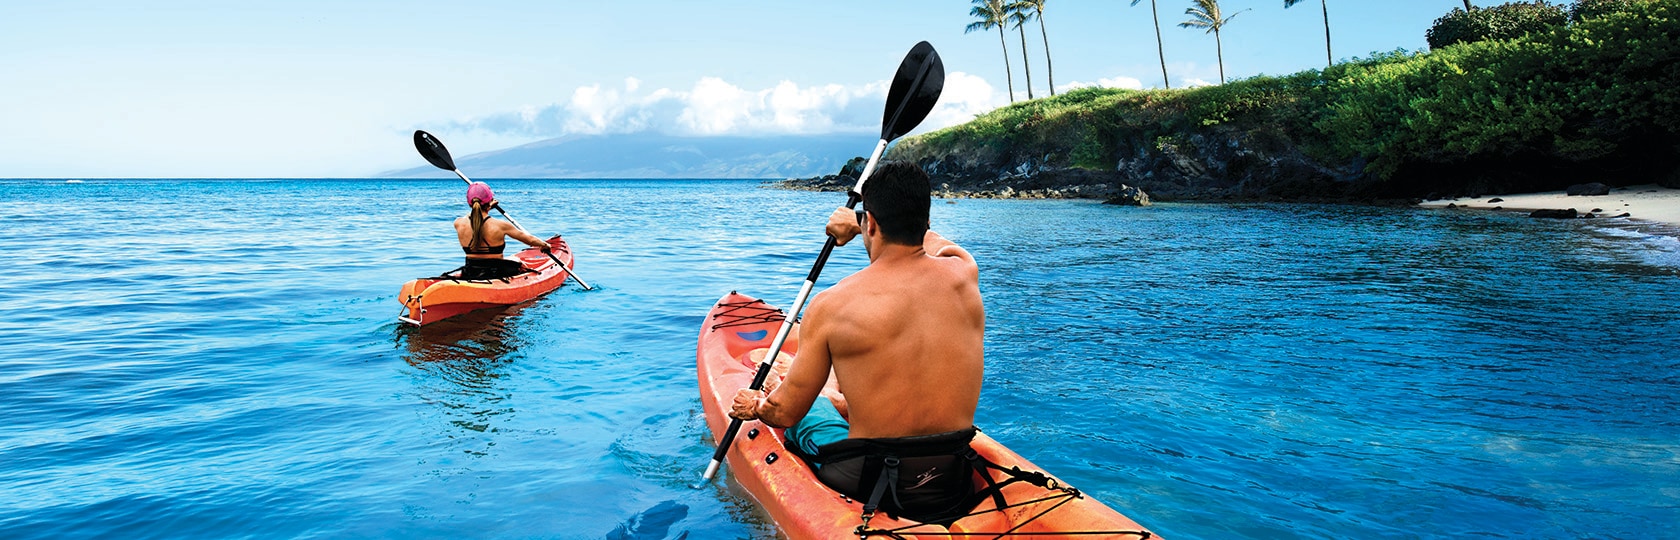 due persone in kayak lungo la riva dell'oceano con palme